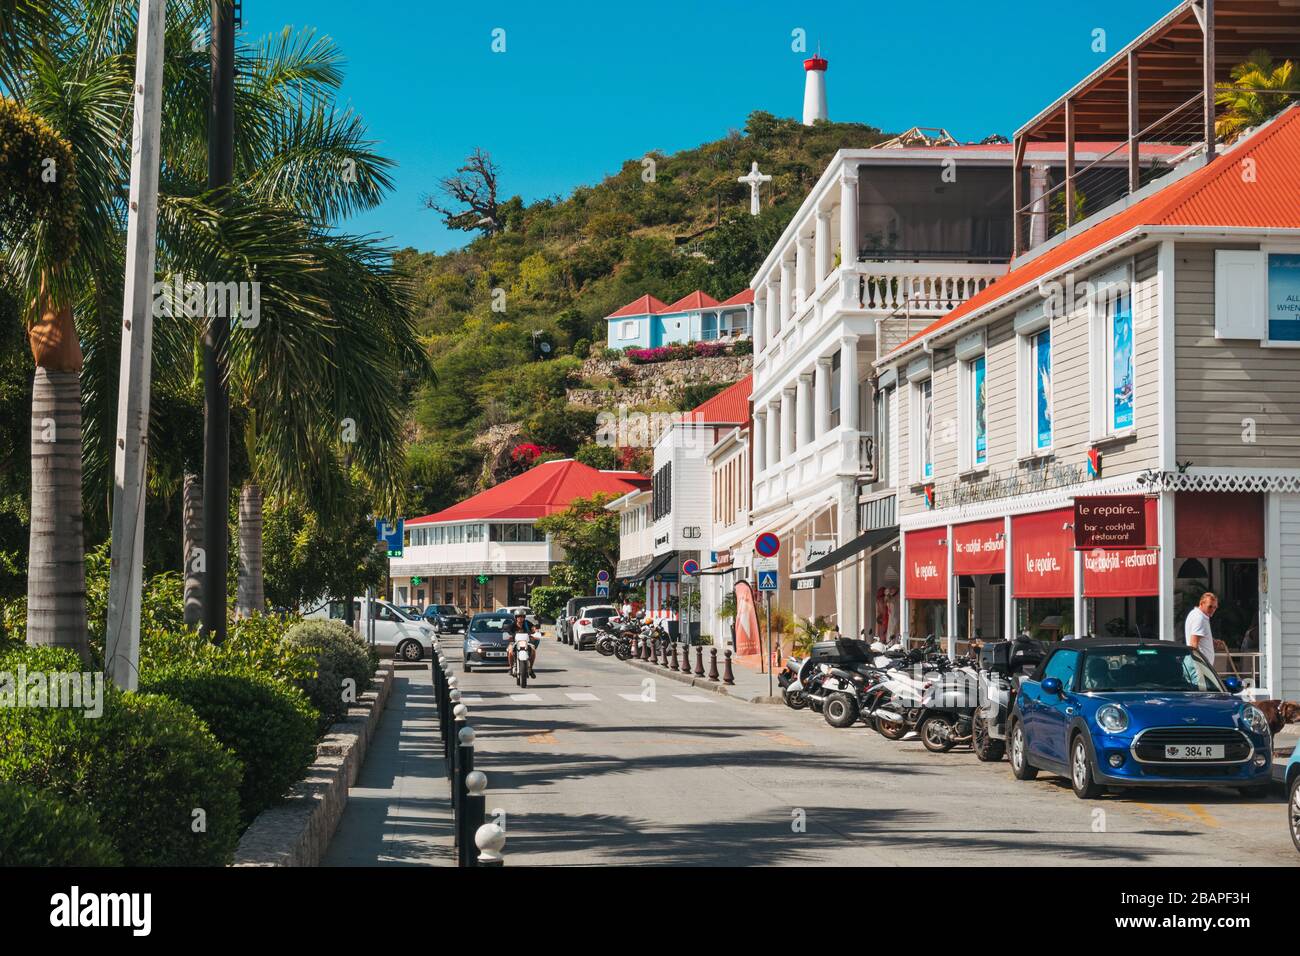 La rue au bord de l'eau dans la ville de Gustavia, capitale de Saint Barthélemy Banque D'Images